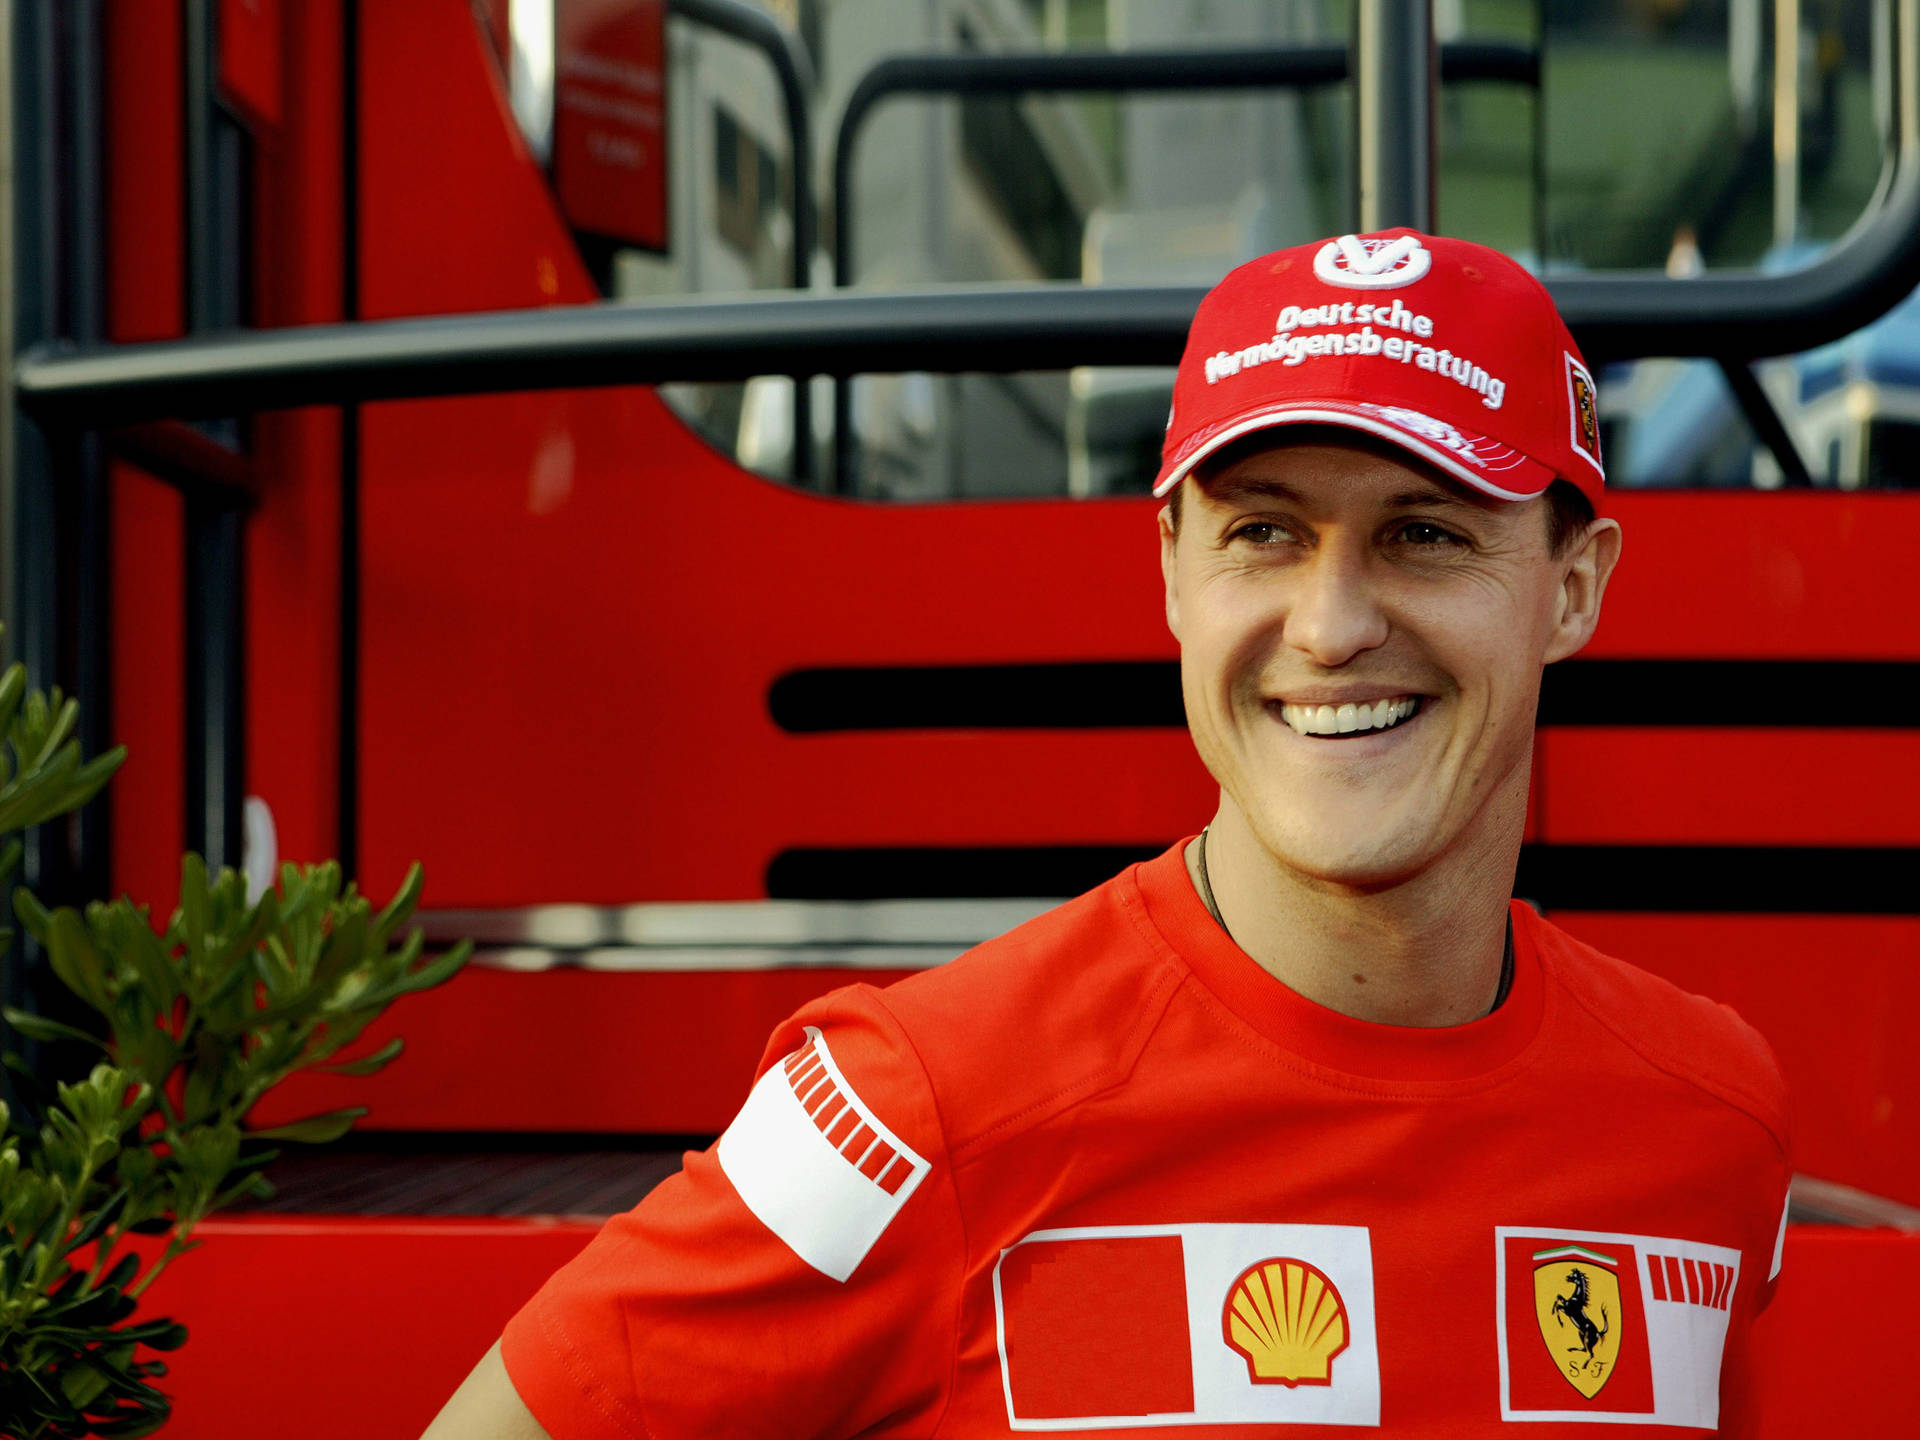 Happy Grinnng Michael Schumacher